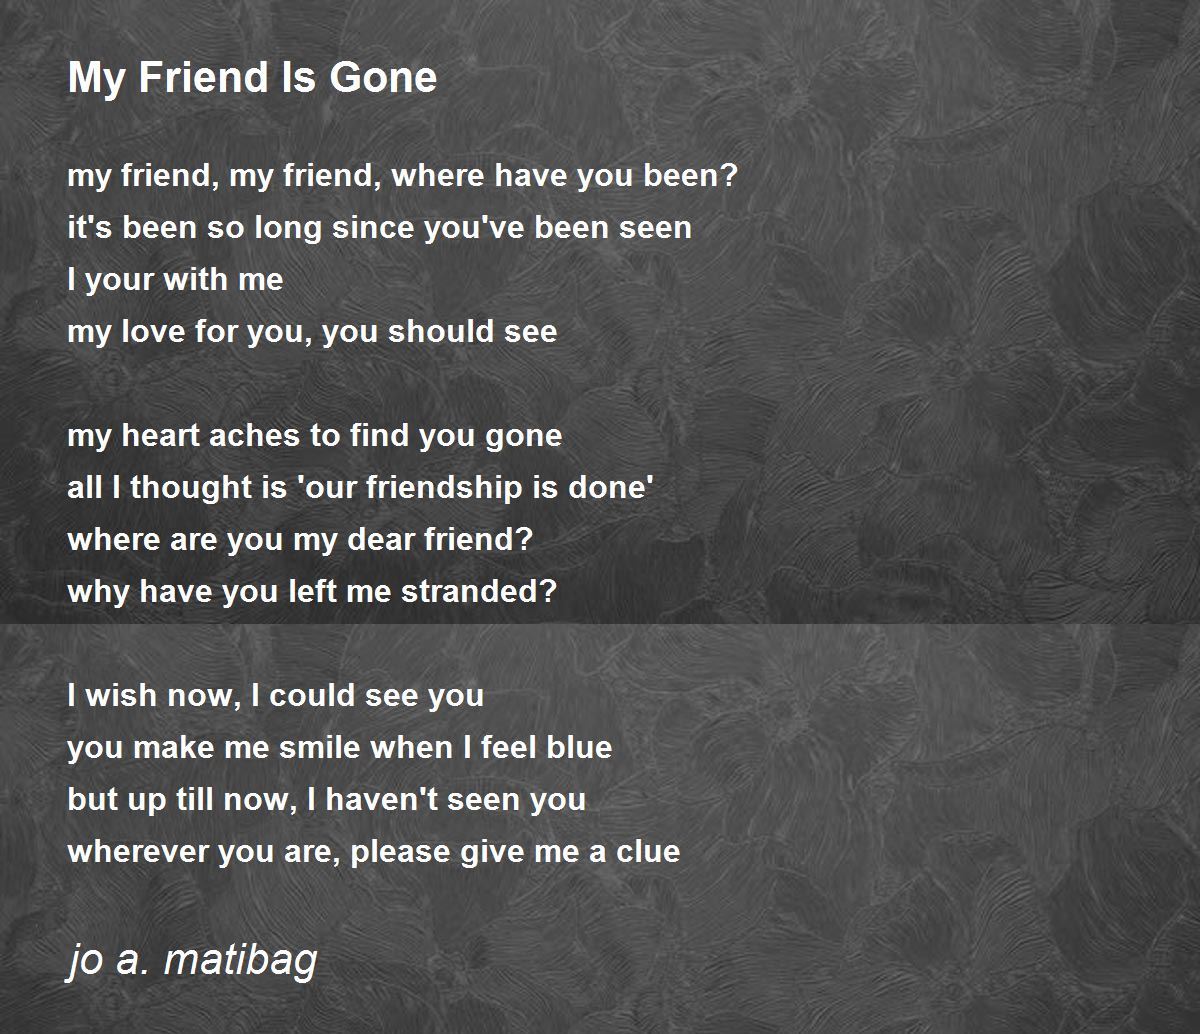 My Friend Is Gone - My Friend Is Gone Poem by jo a. matibag